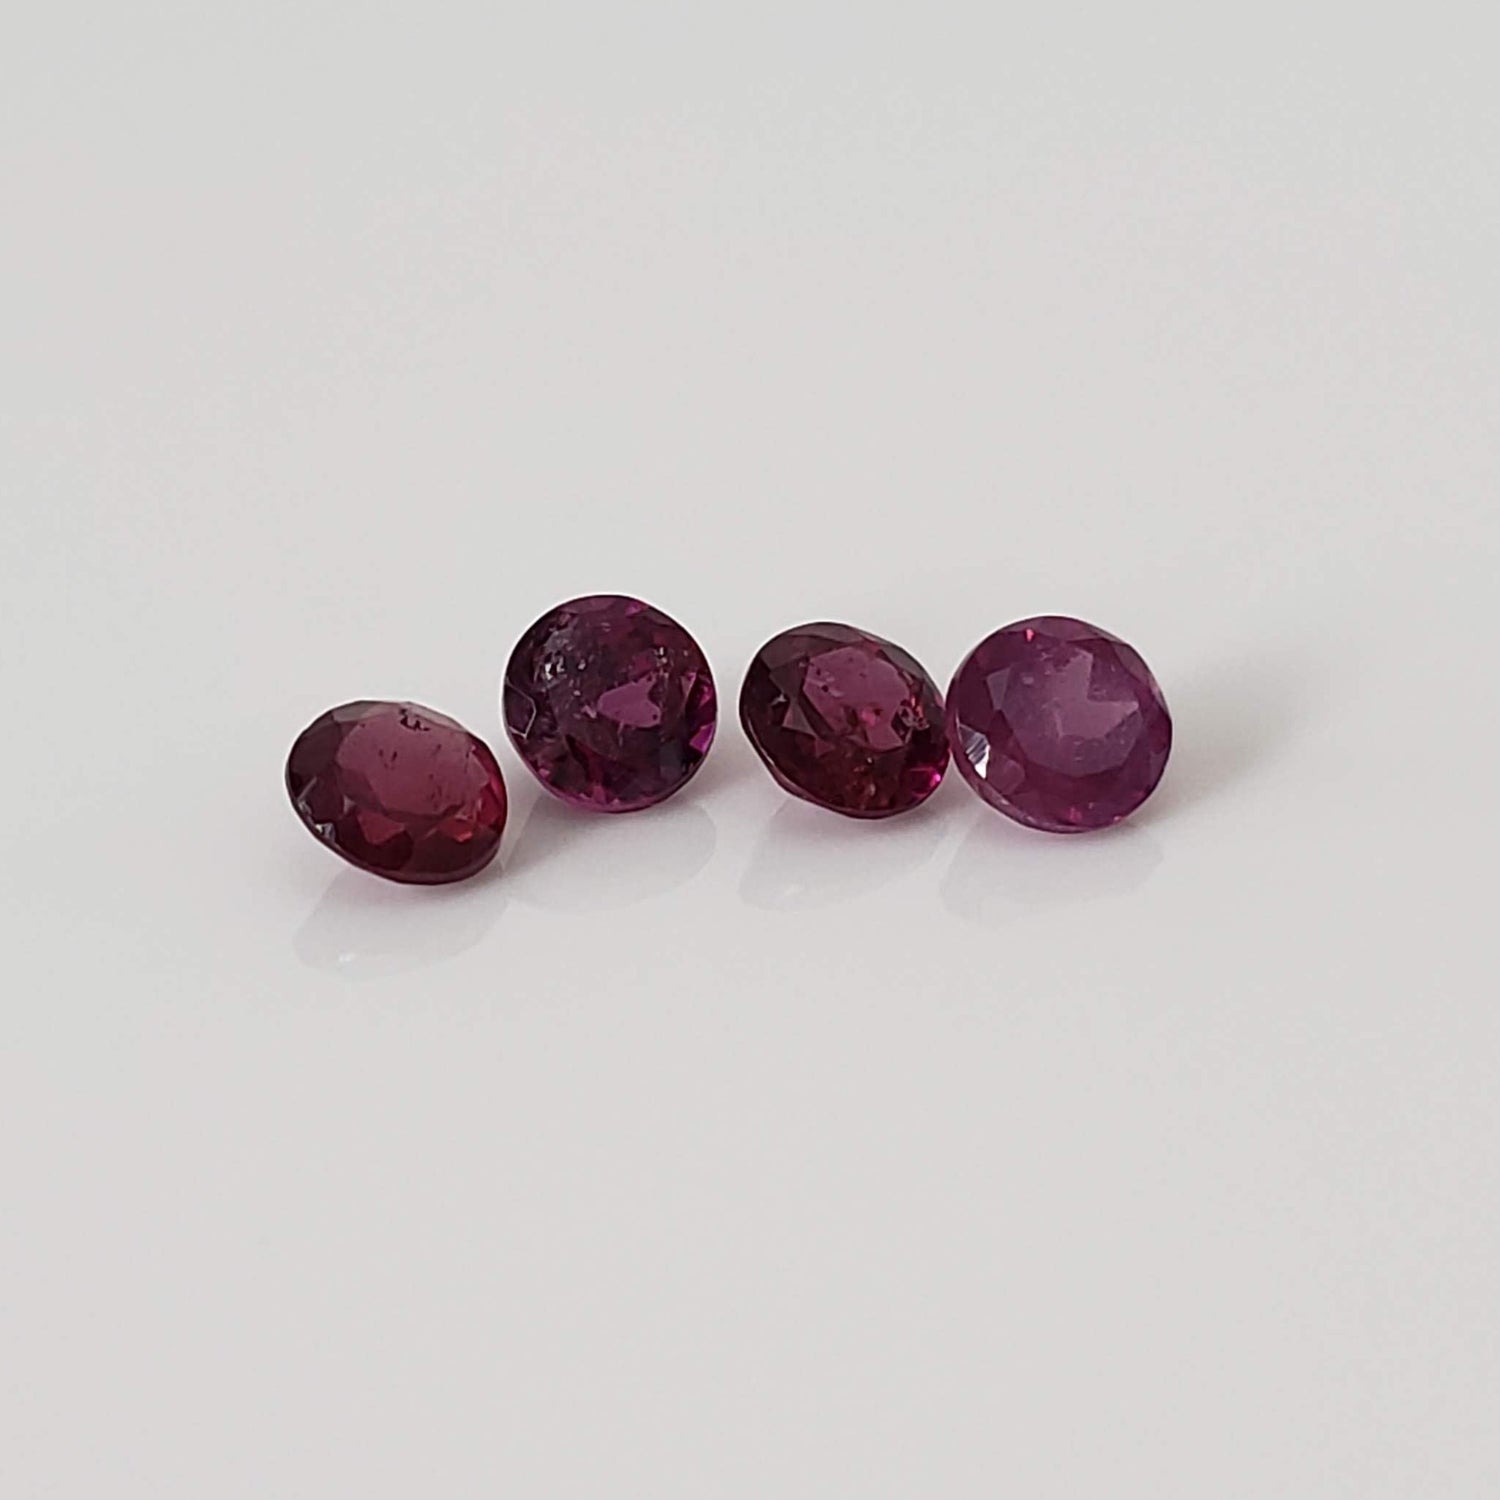 Rhodolite Garnet | 4 Piece Lot | Round Cut | Reddish Purple | 4mm